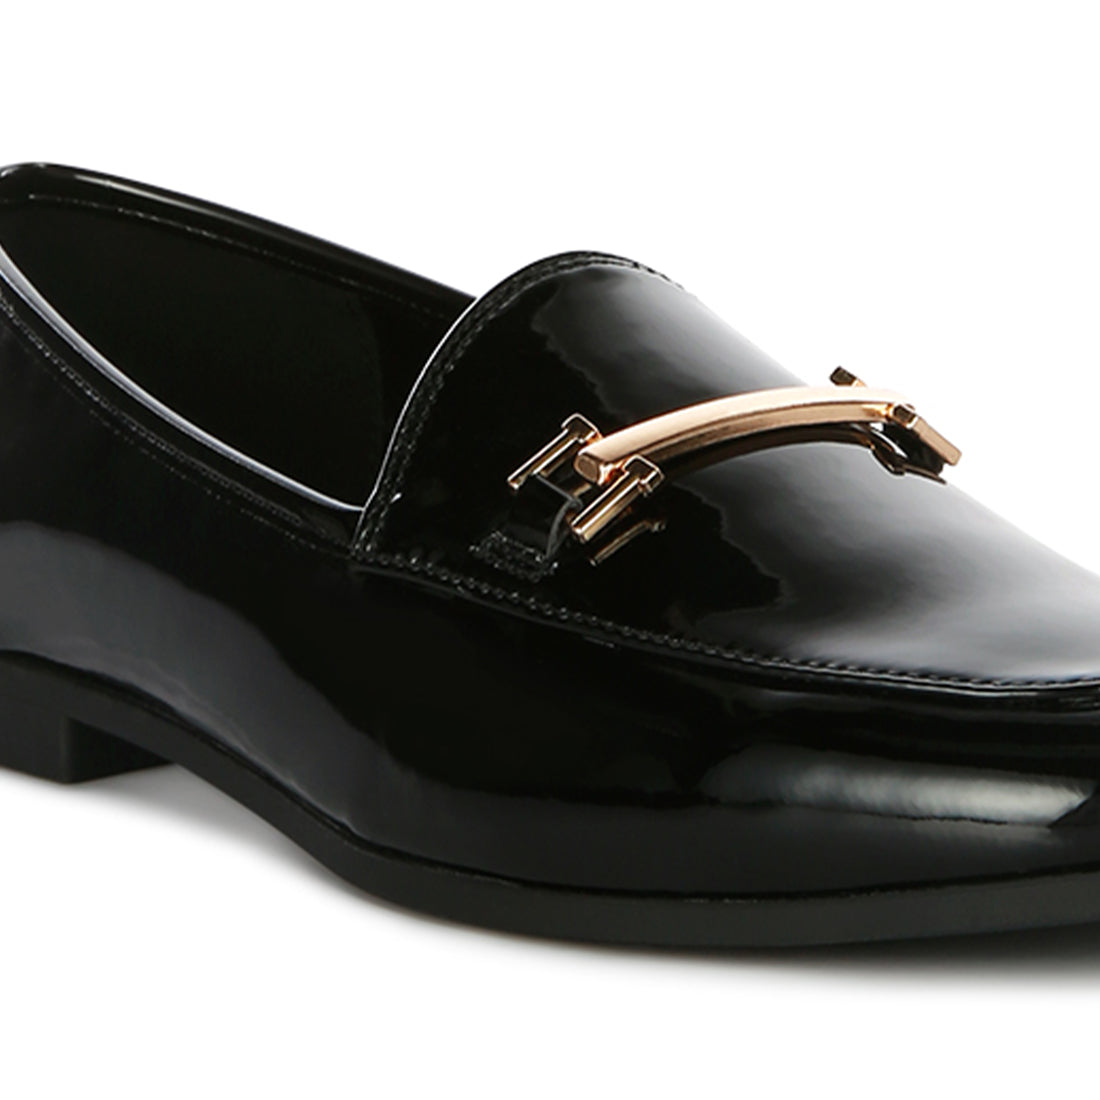 Black Semi Casual Loafers